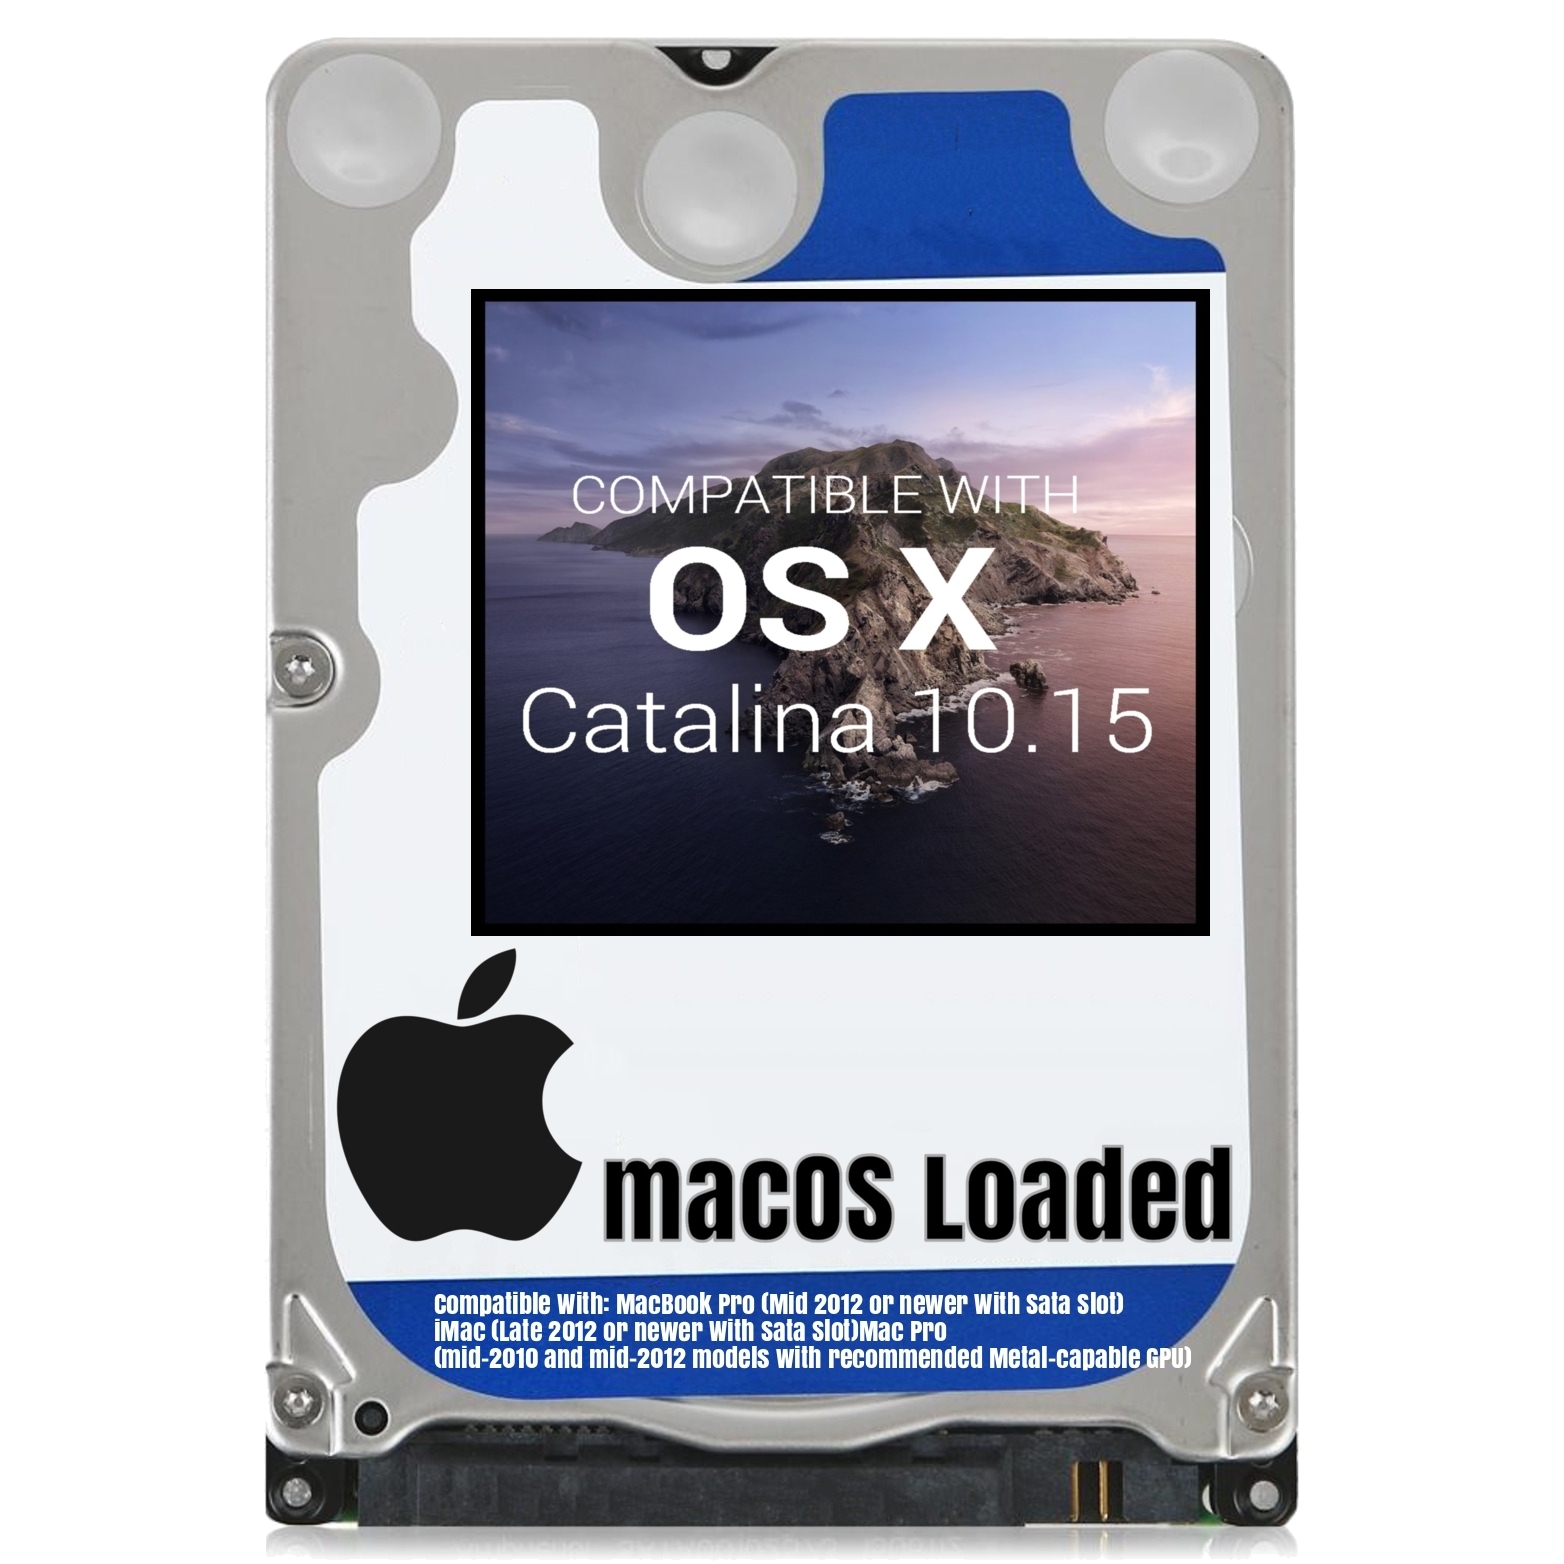 macOS Mac OS X 10.15 Catalina Preloaded on Sata HDD - $13.99 - $36.99